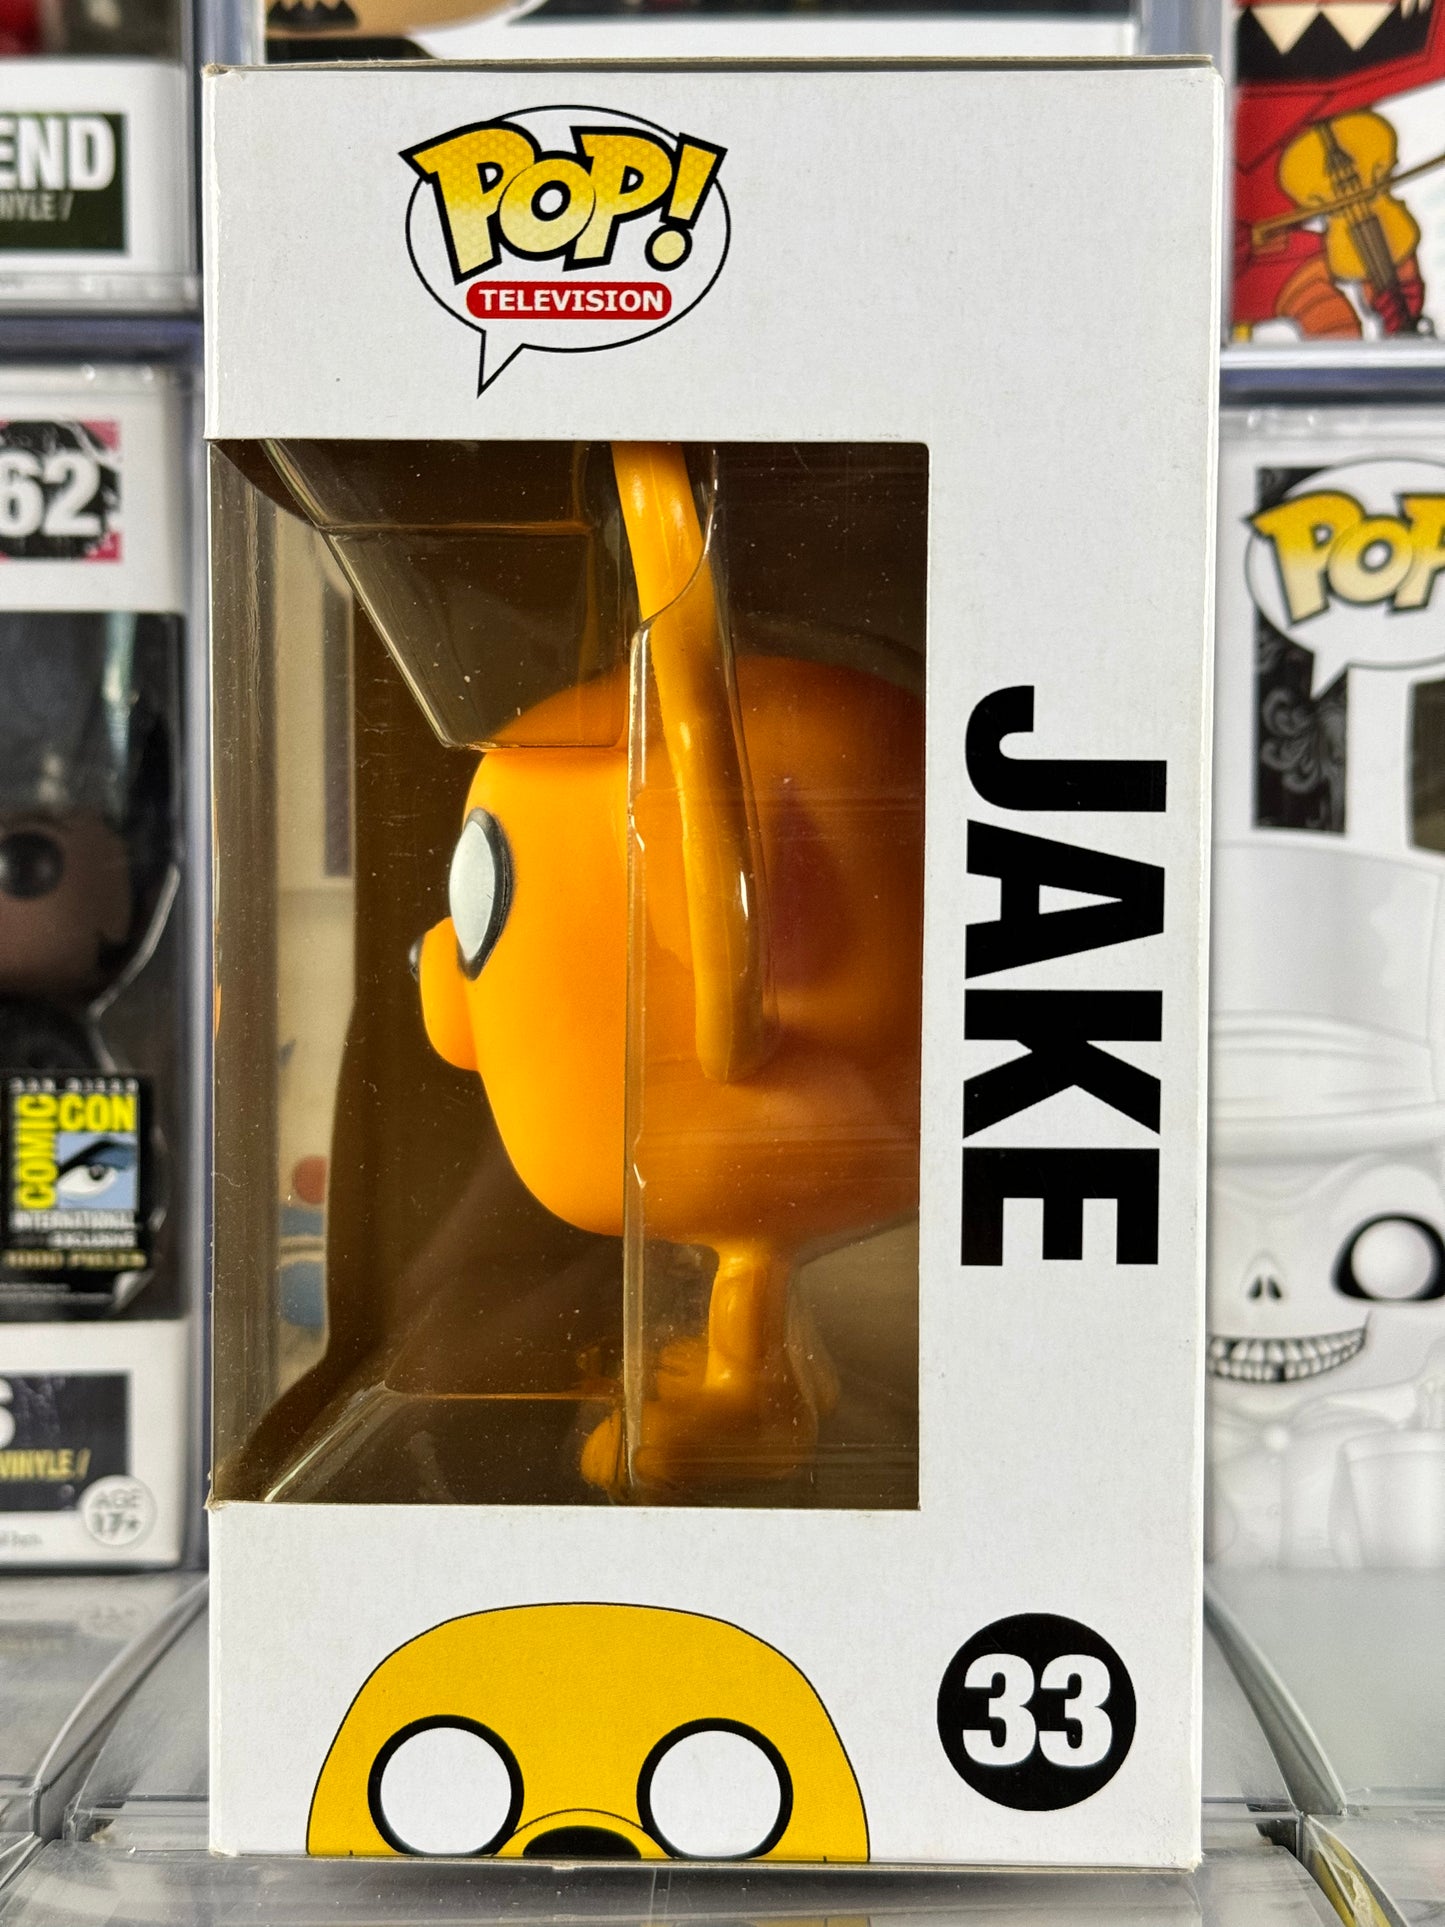 Adventure Time - Jake (33) Vaulted